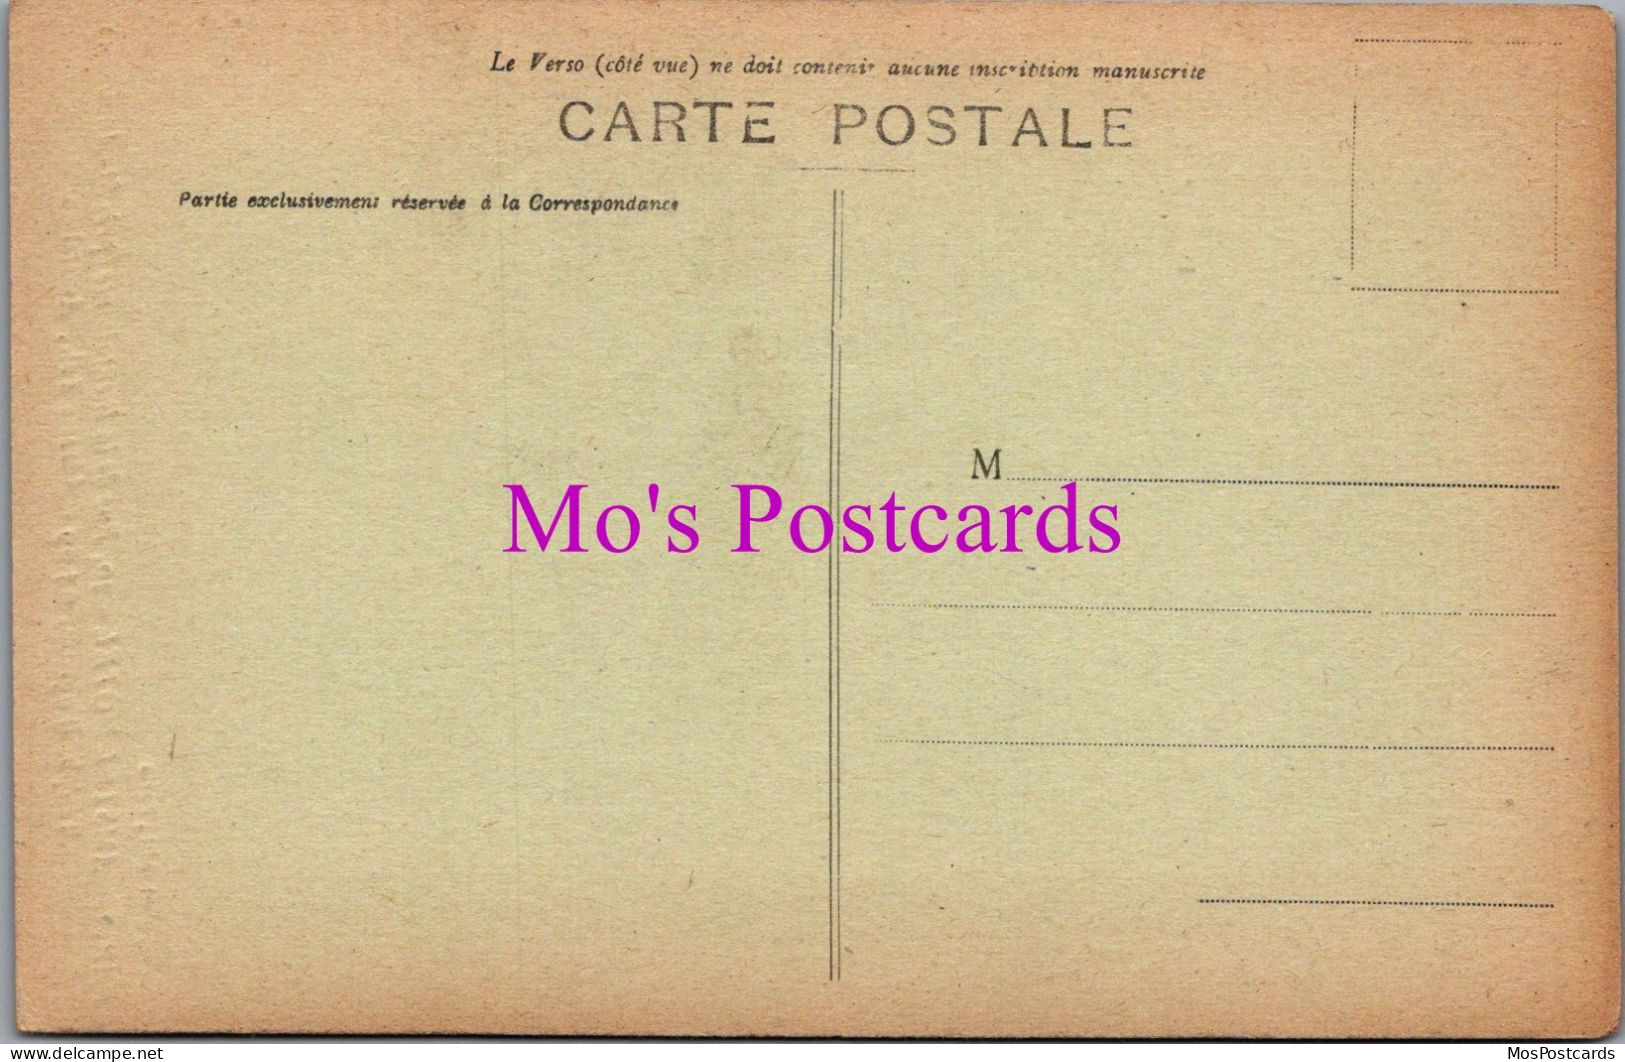 France Postcard - Paris, Amstelhotel, 30 Rue De La Bienfaisance DZ325 - Cafés, Hôtels, Restaurants